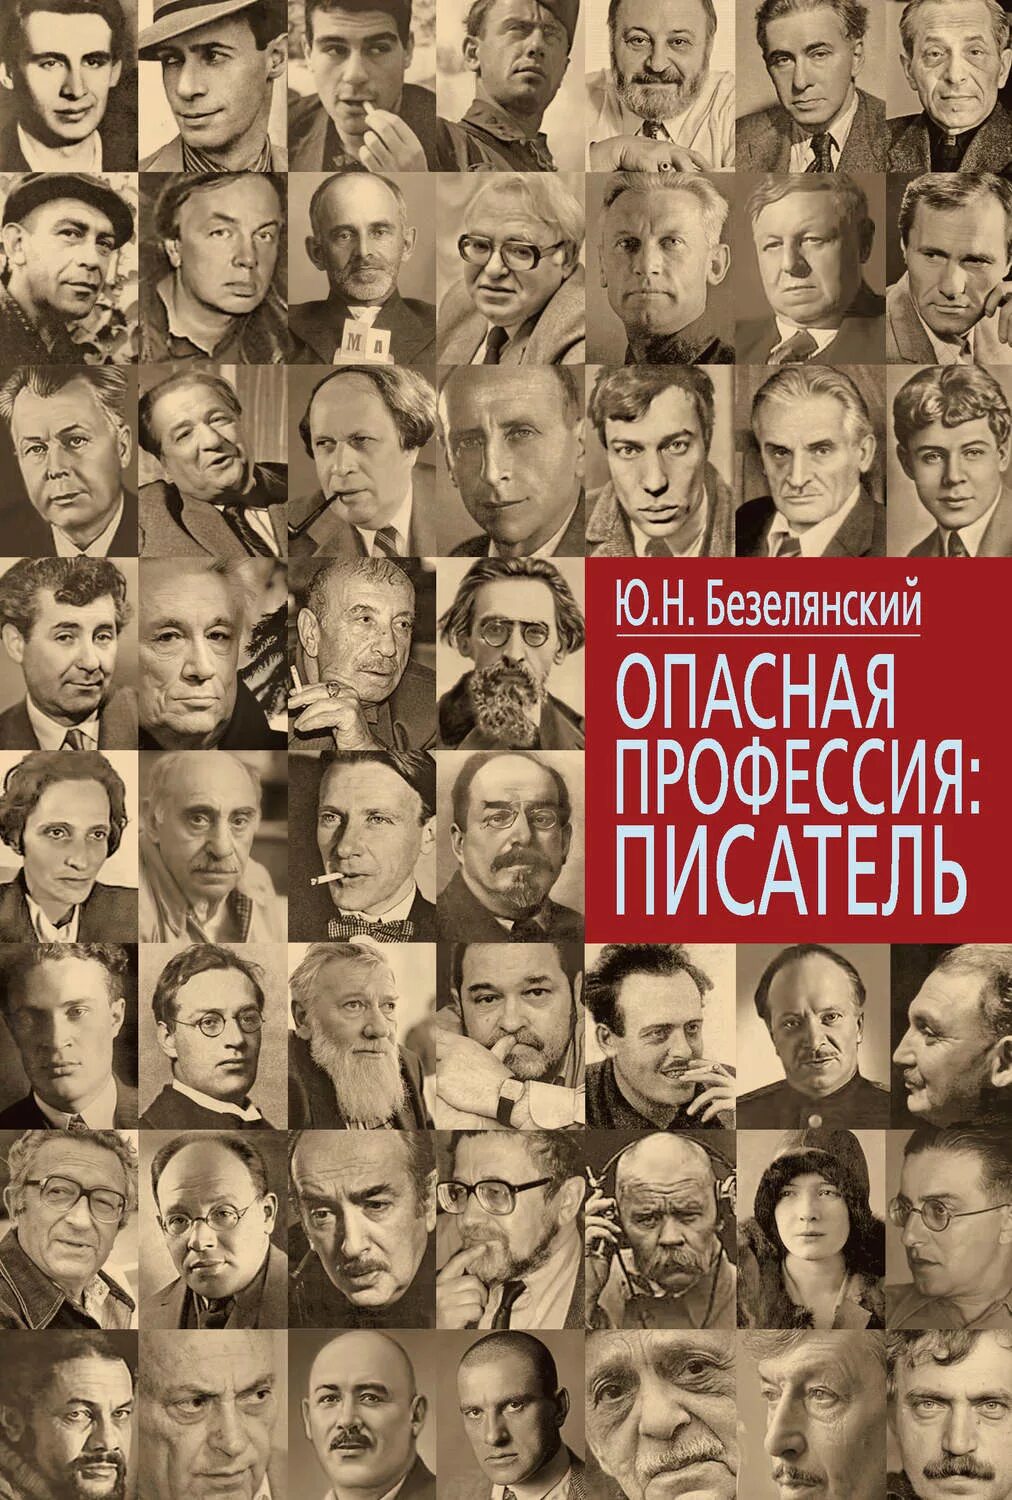 Советские Писатели. Опасная профессия писатель. Советские Писатели список.